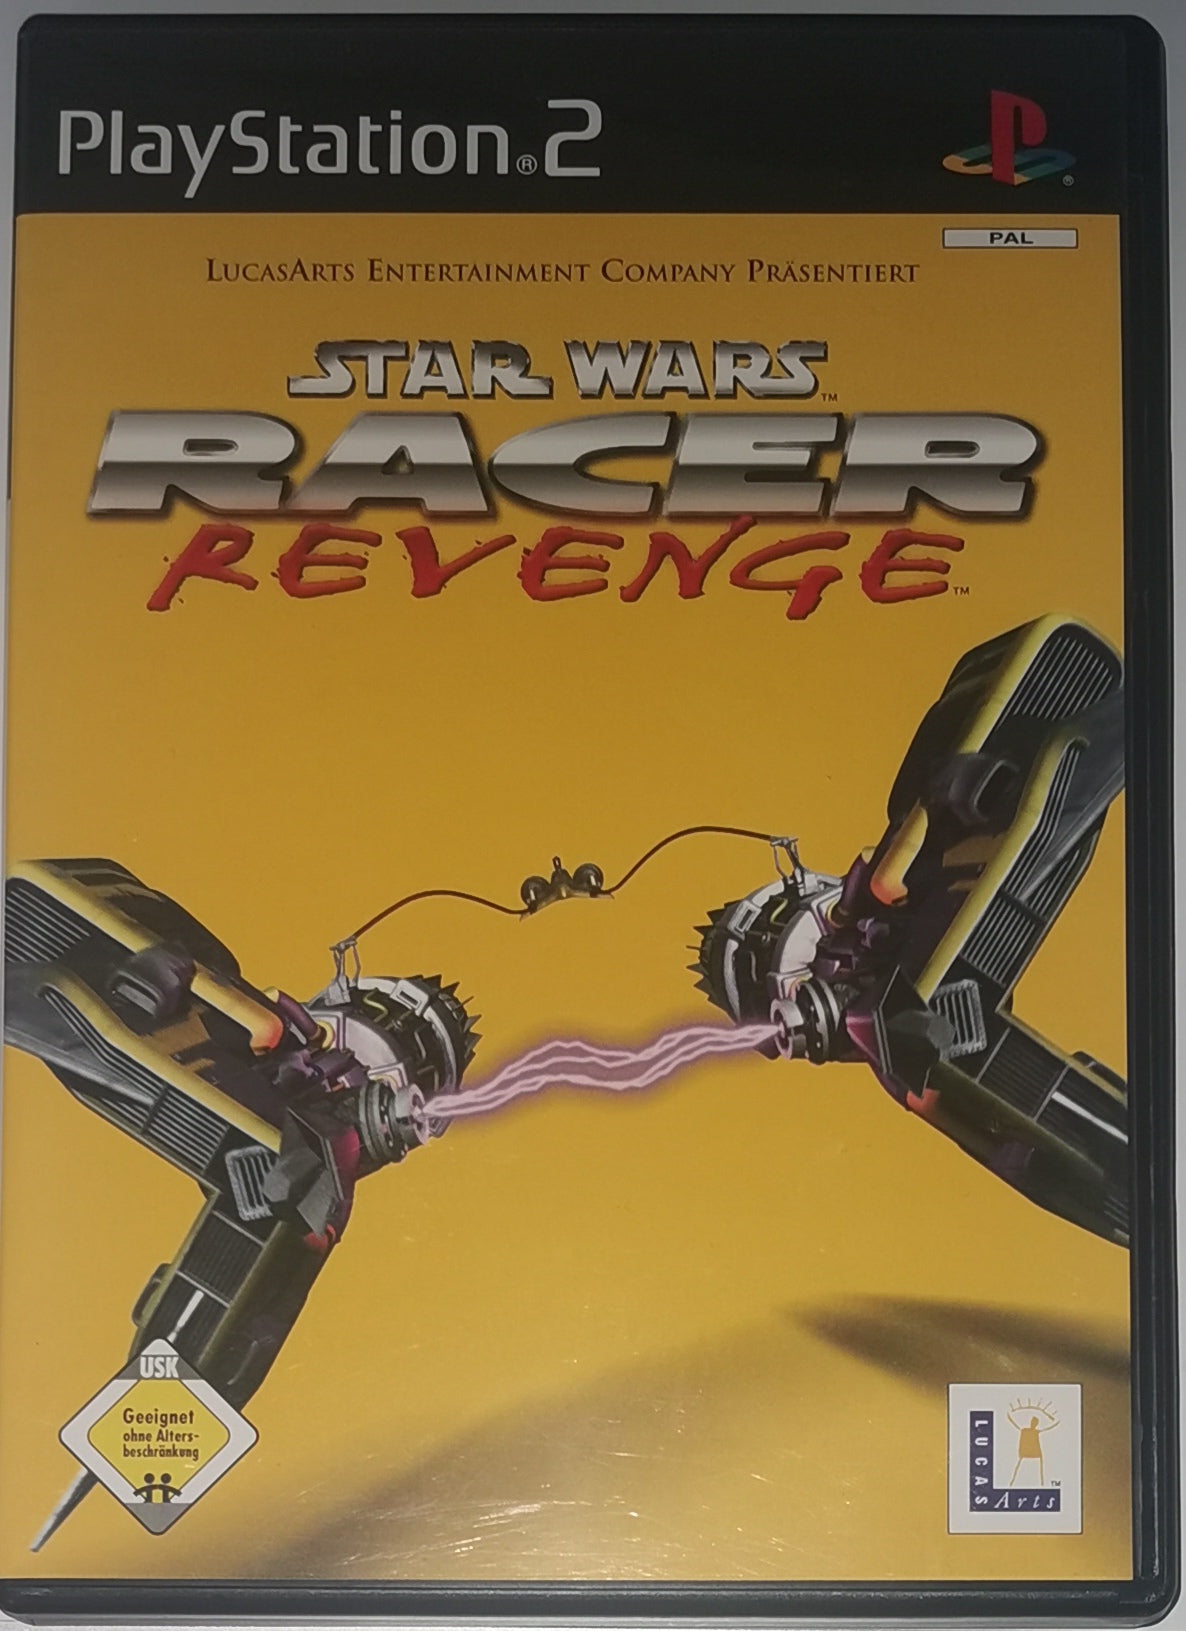 Star Wars Racer Revenge (Playstation 2) [Sehr Gut]